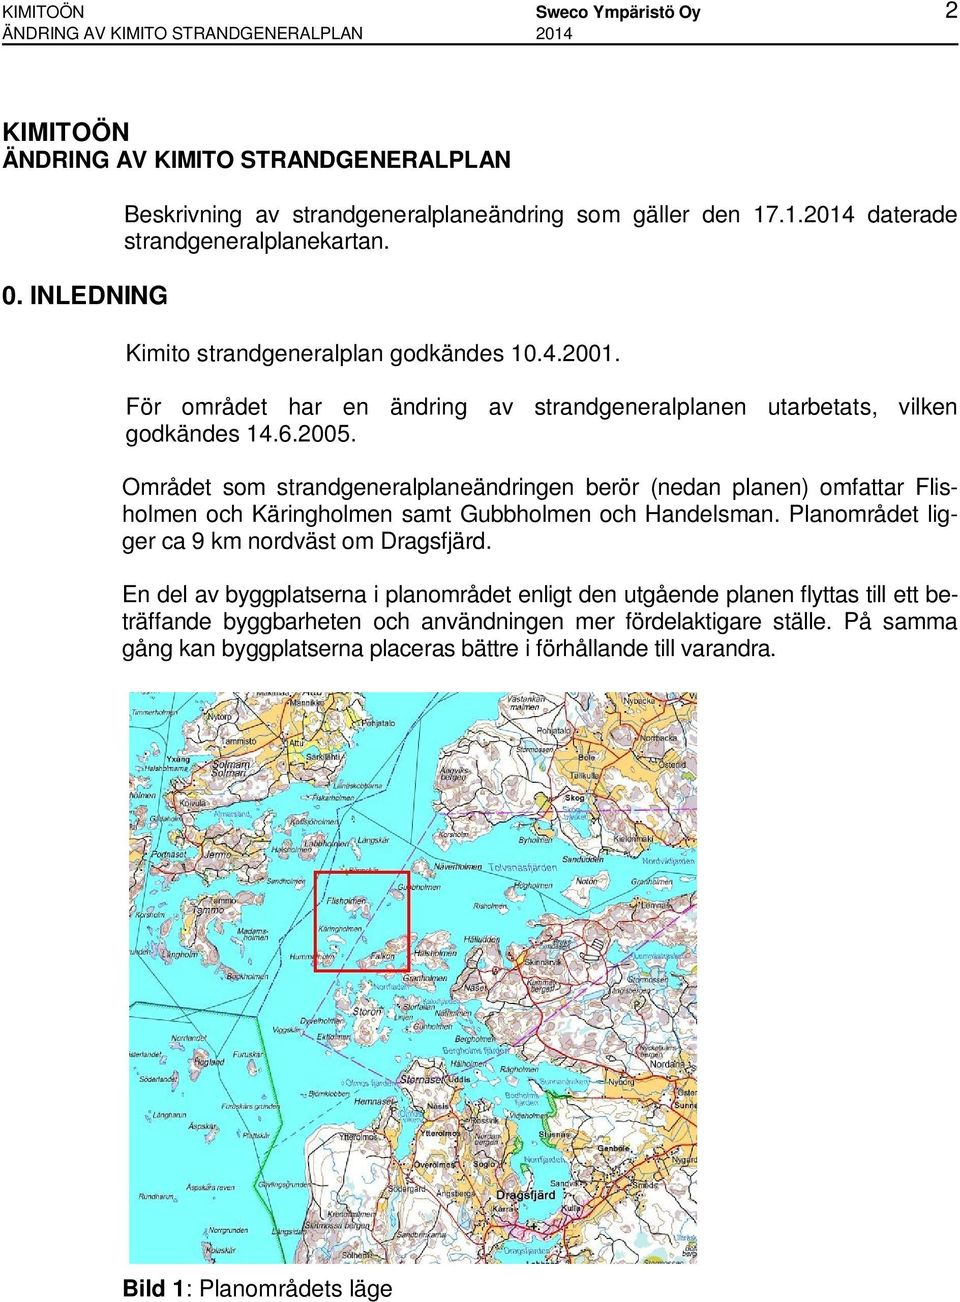 Området som strandgeneralplaneändringen berör (nedan planen) omfattar Flisholmen och Käringholmen samt Gubbholmen och Handelsman. Planområdet ligger ca 9 km nordväst om Dragsfjärd.